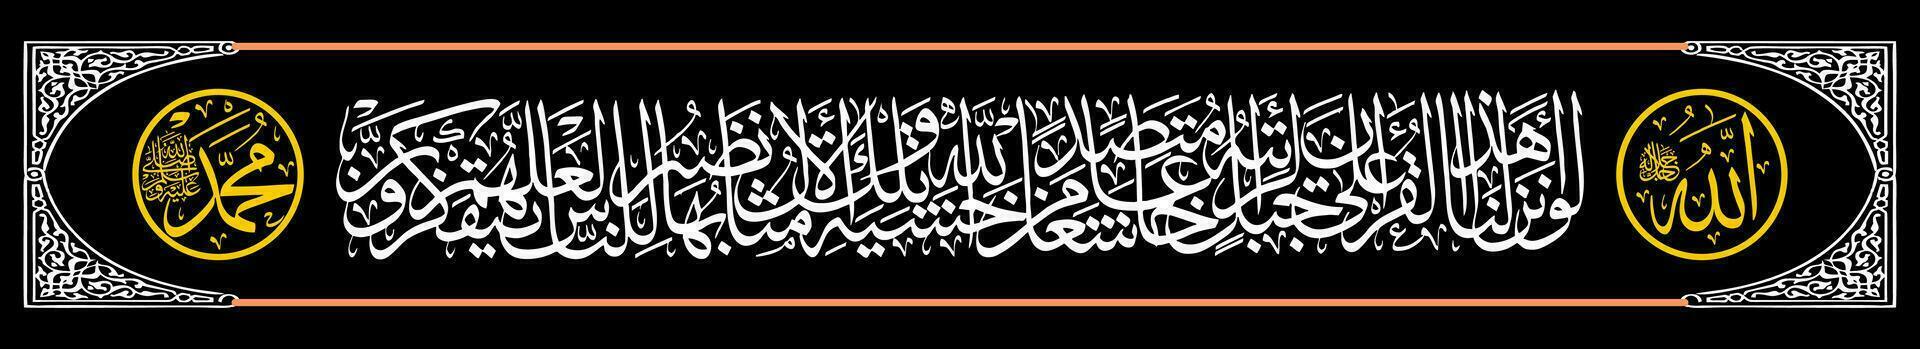 calligrafia thuluth al Corano surat al hasyr 21 quale si intende Se noi inviato giù Questo al Corano per un' montagna, voi voluto certamente vedere esso inchinandosi giù nel pezzi dovuto per paura di Allah. vettore